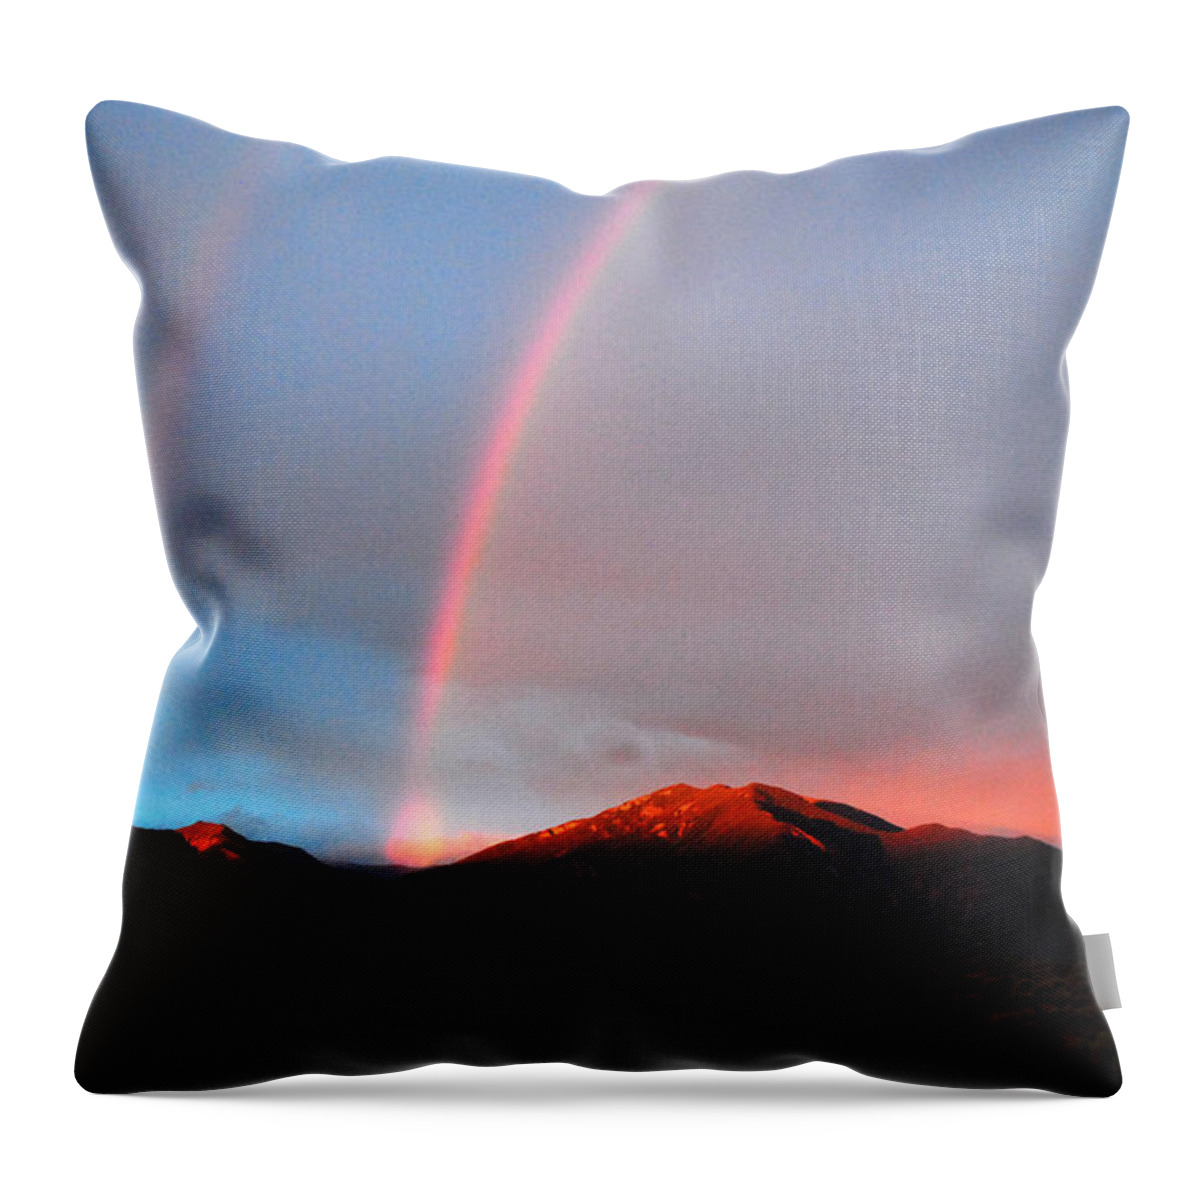 Rainbow Throw Pillow featuring the photograph Mike's Rainbow by Glory Ann Penington